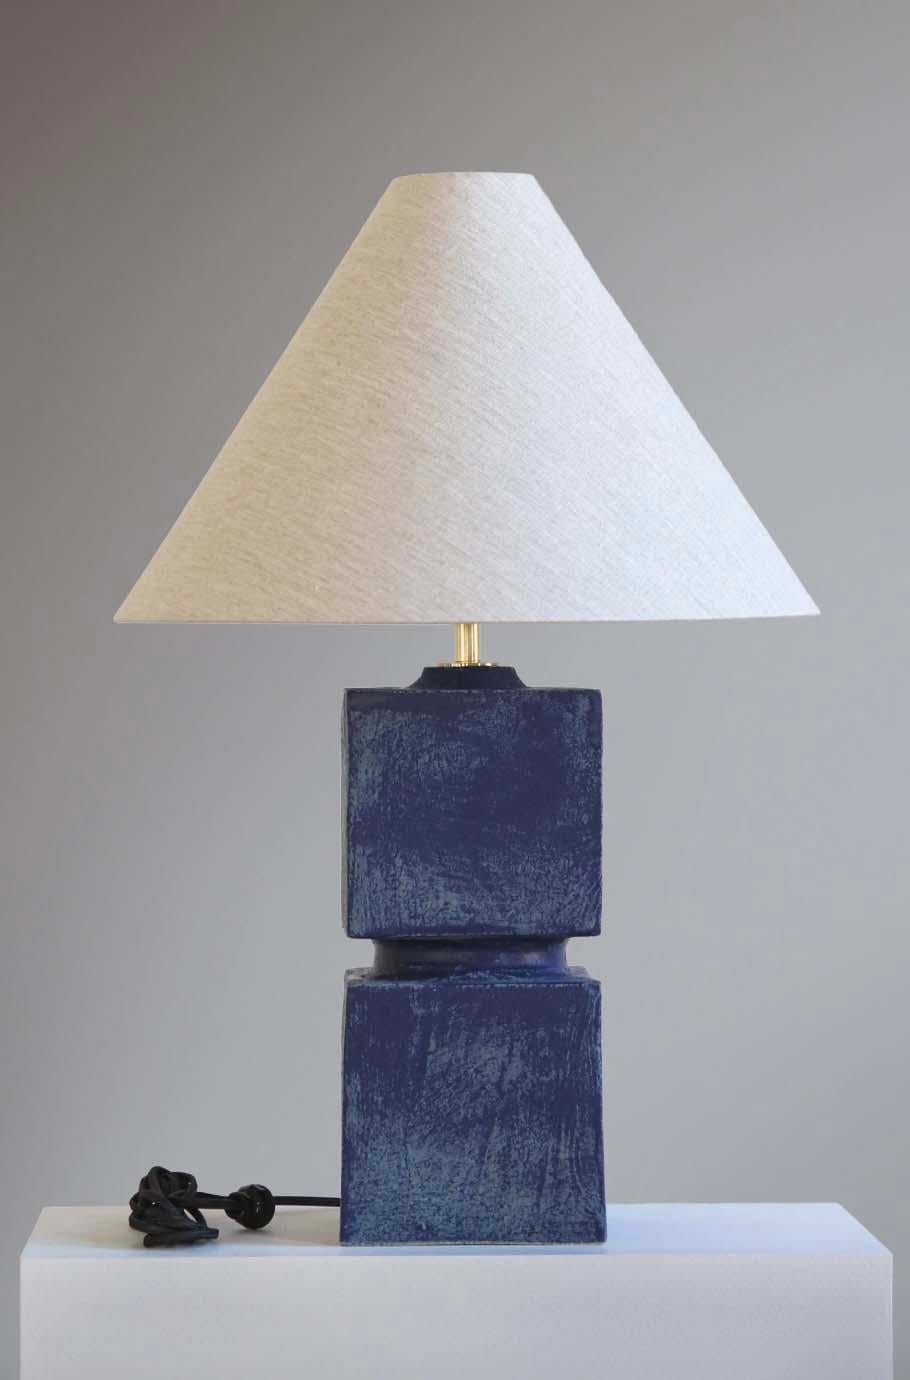 La lámpara Talis es cerámica de estudio hecha a mano por el artista ceramista Danny Kaplan. Pantalla incluida. Ten en cuenta que las dimensiones exactas pueden variar.

Nacido en Nueva York y criado en Aix-en-Provence (Francia), la pasión de Danny